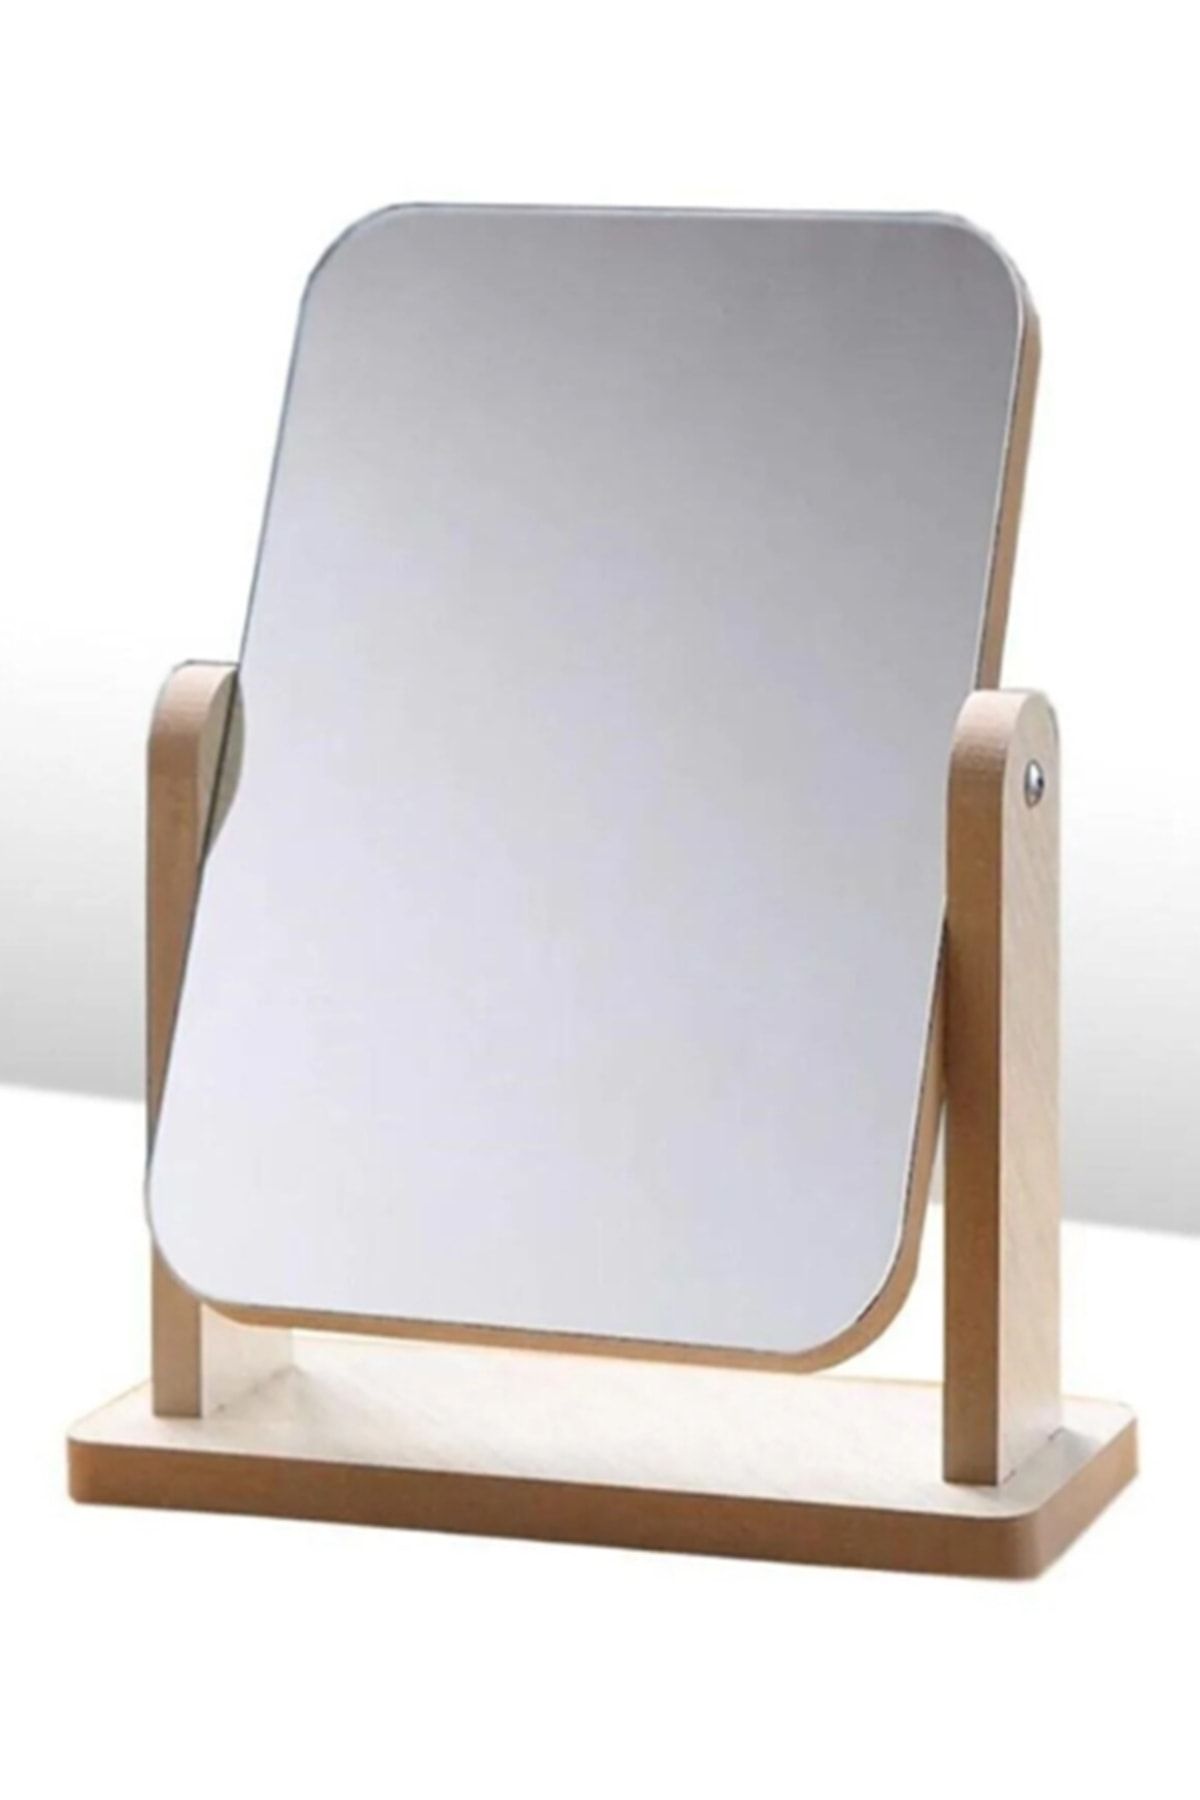 gaman Dikdörtgen Masaüstü Ahşap Tasarımlı Şık Makyaj Aynası Make Up Mirror Nostaljik Makyaj Aynası